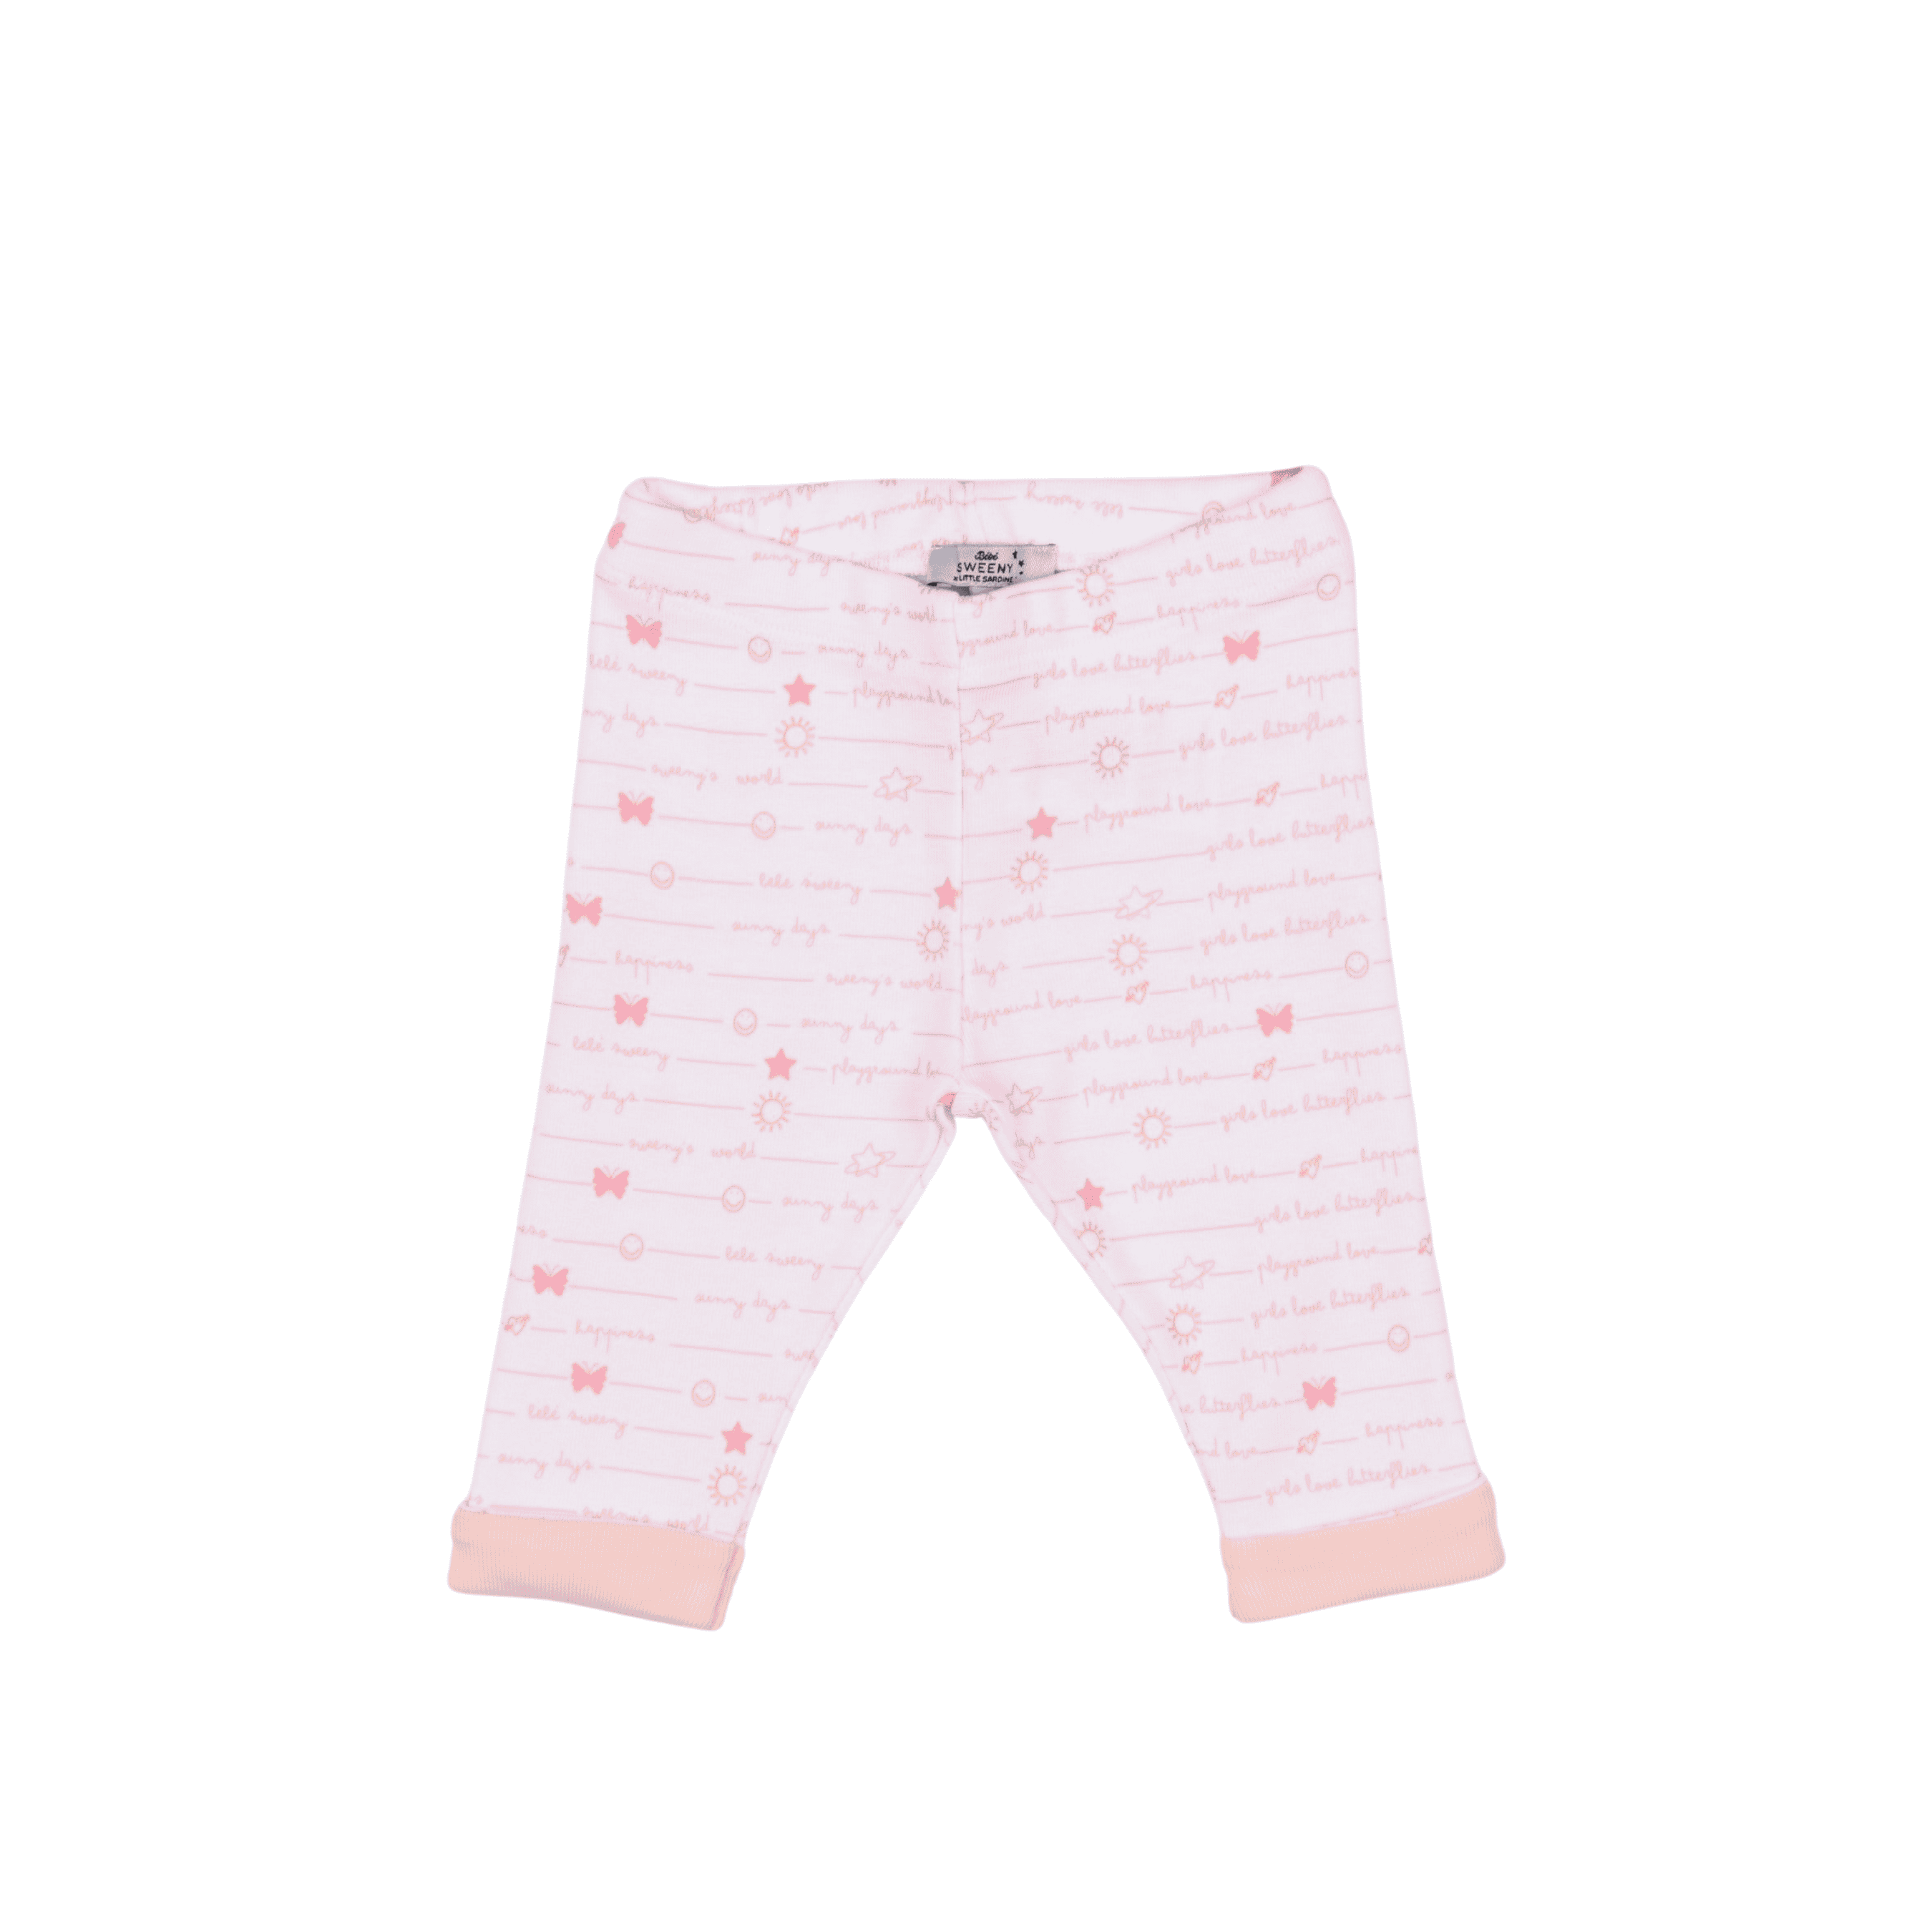 Baby Girls White & Cloud Pink Organic Cotton Bodysuit Set (4)